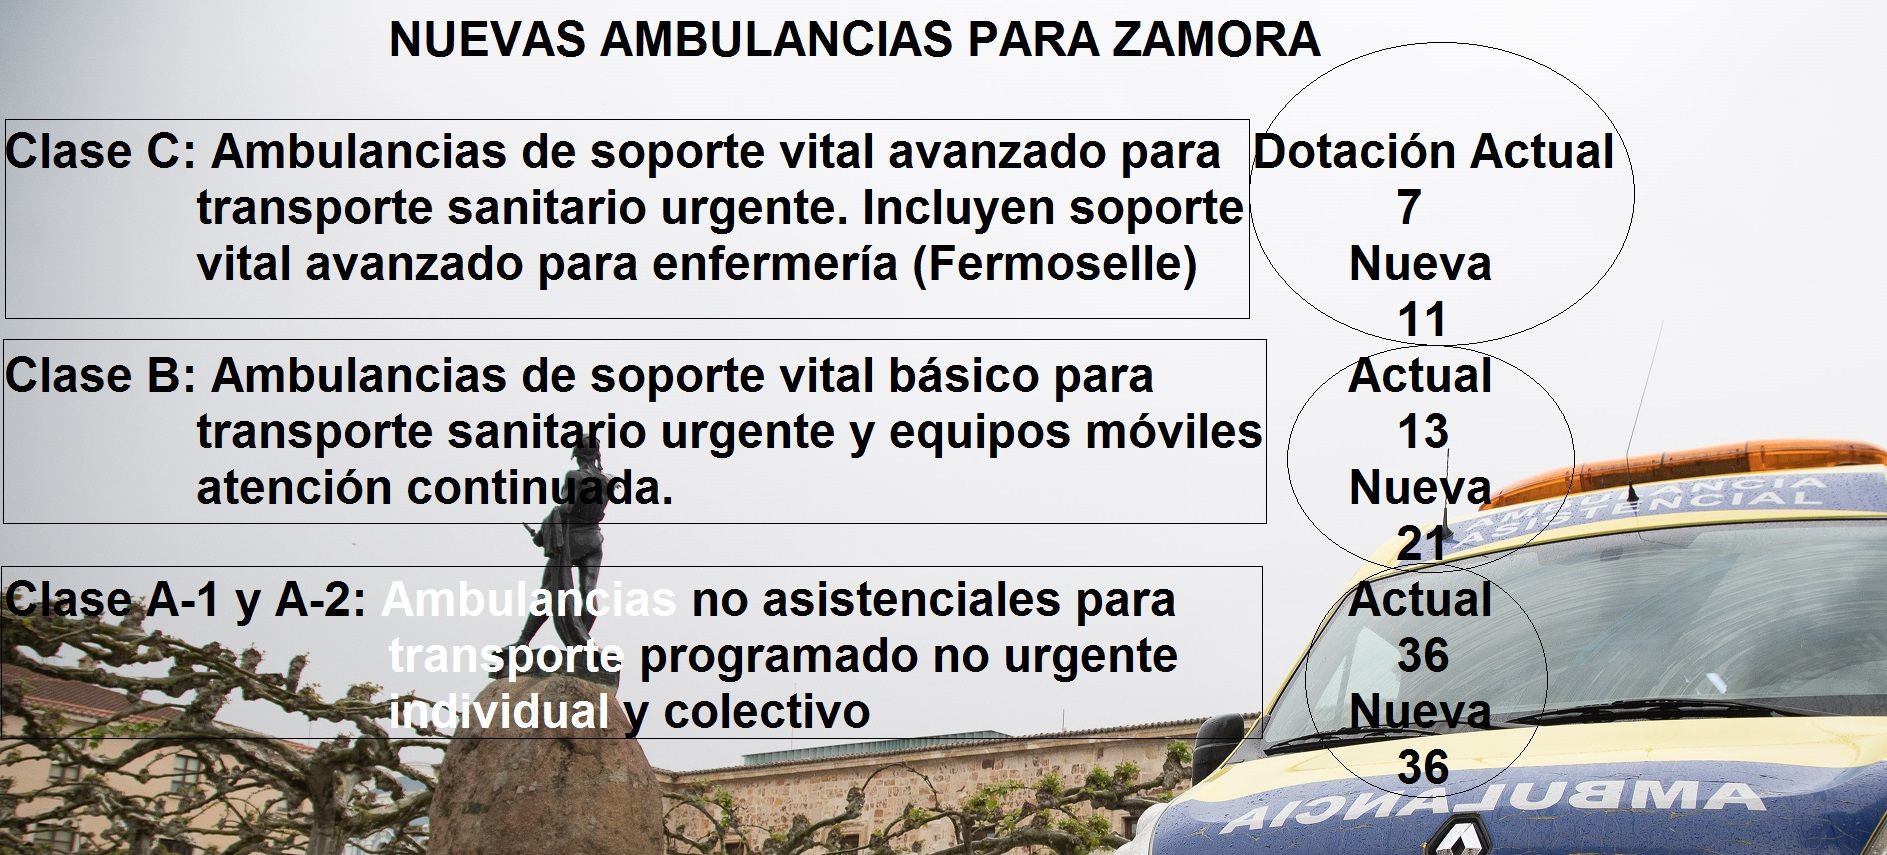 Ambulancias actuales y previstas para Zamora